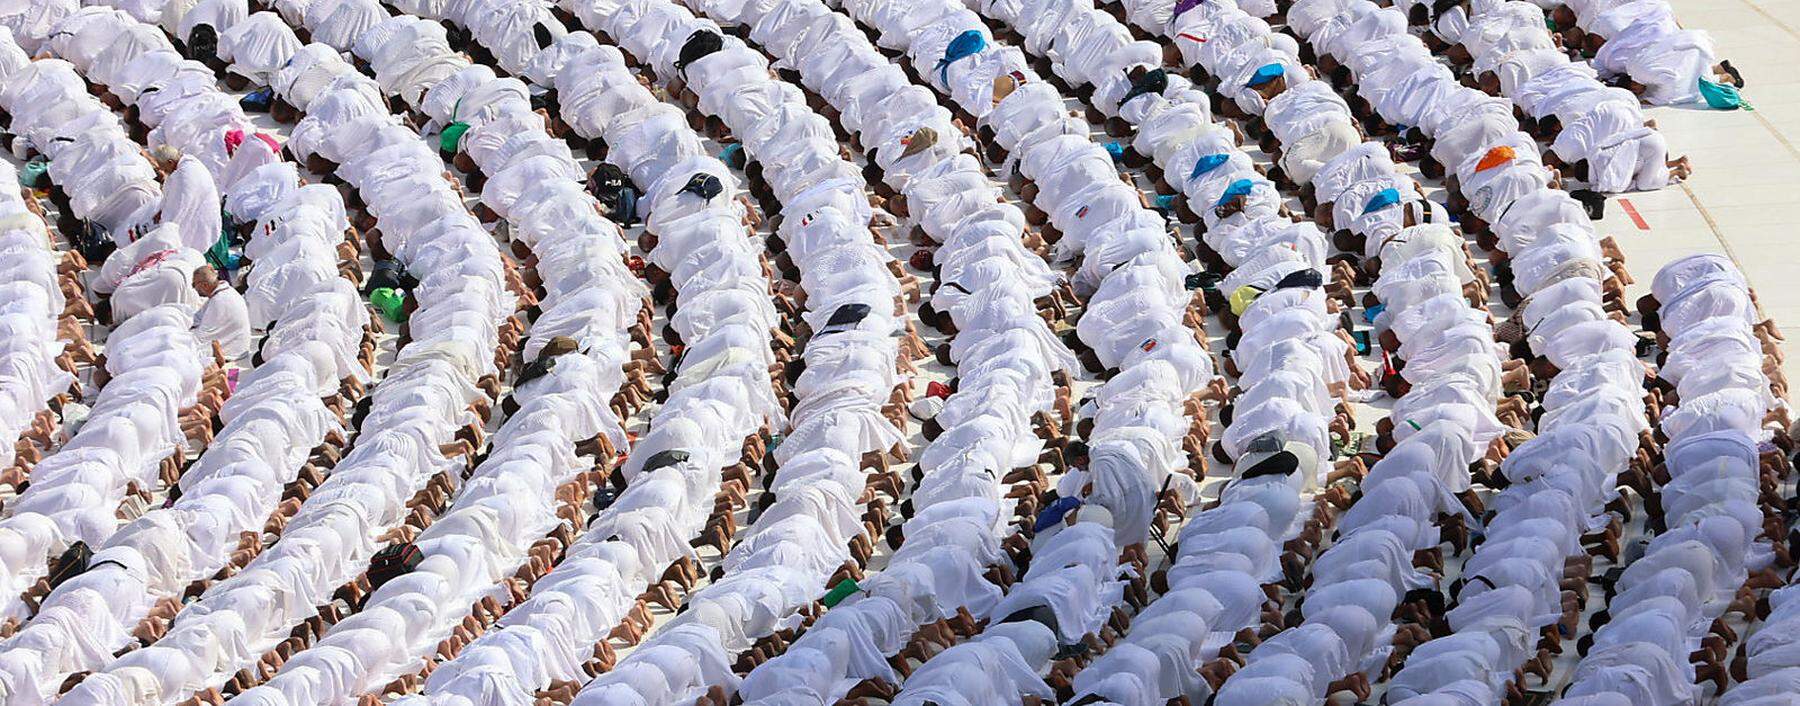 Muslime müssen die Kaaba sieben Mal umrunden, ohne stehen zu bleiben, auch nicht für ein Selfie.